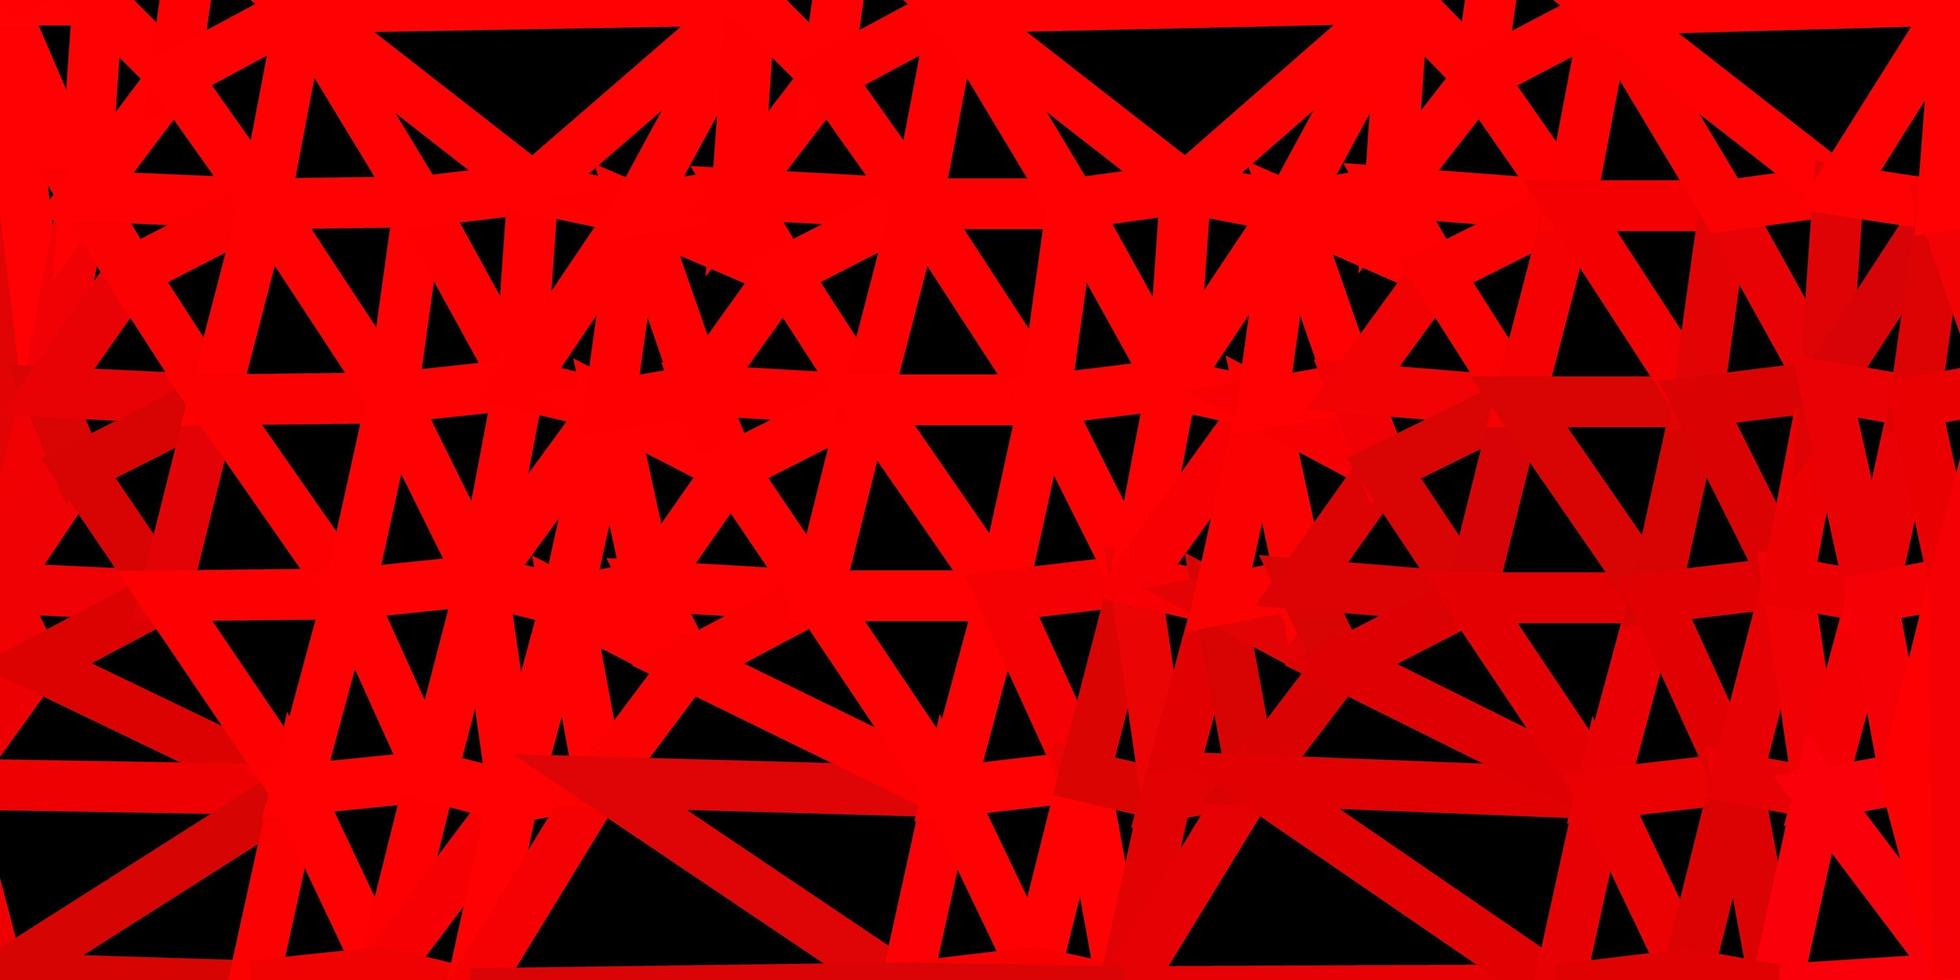 modello di triangolo astratto di vettore rosso scuro.